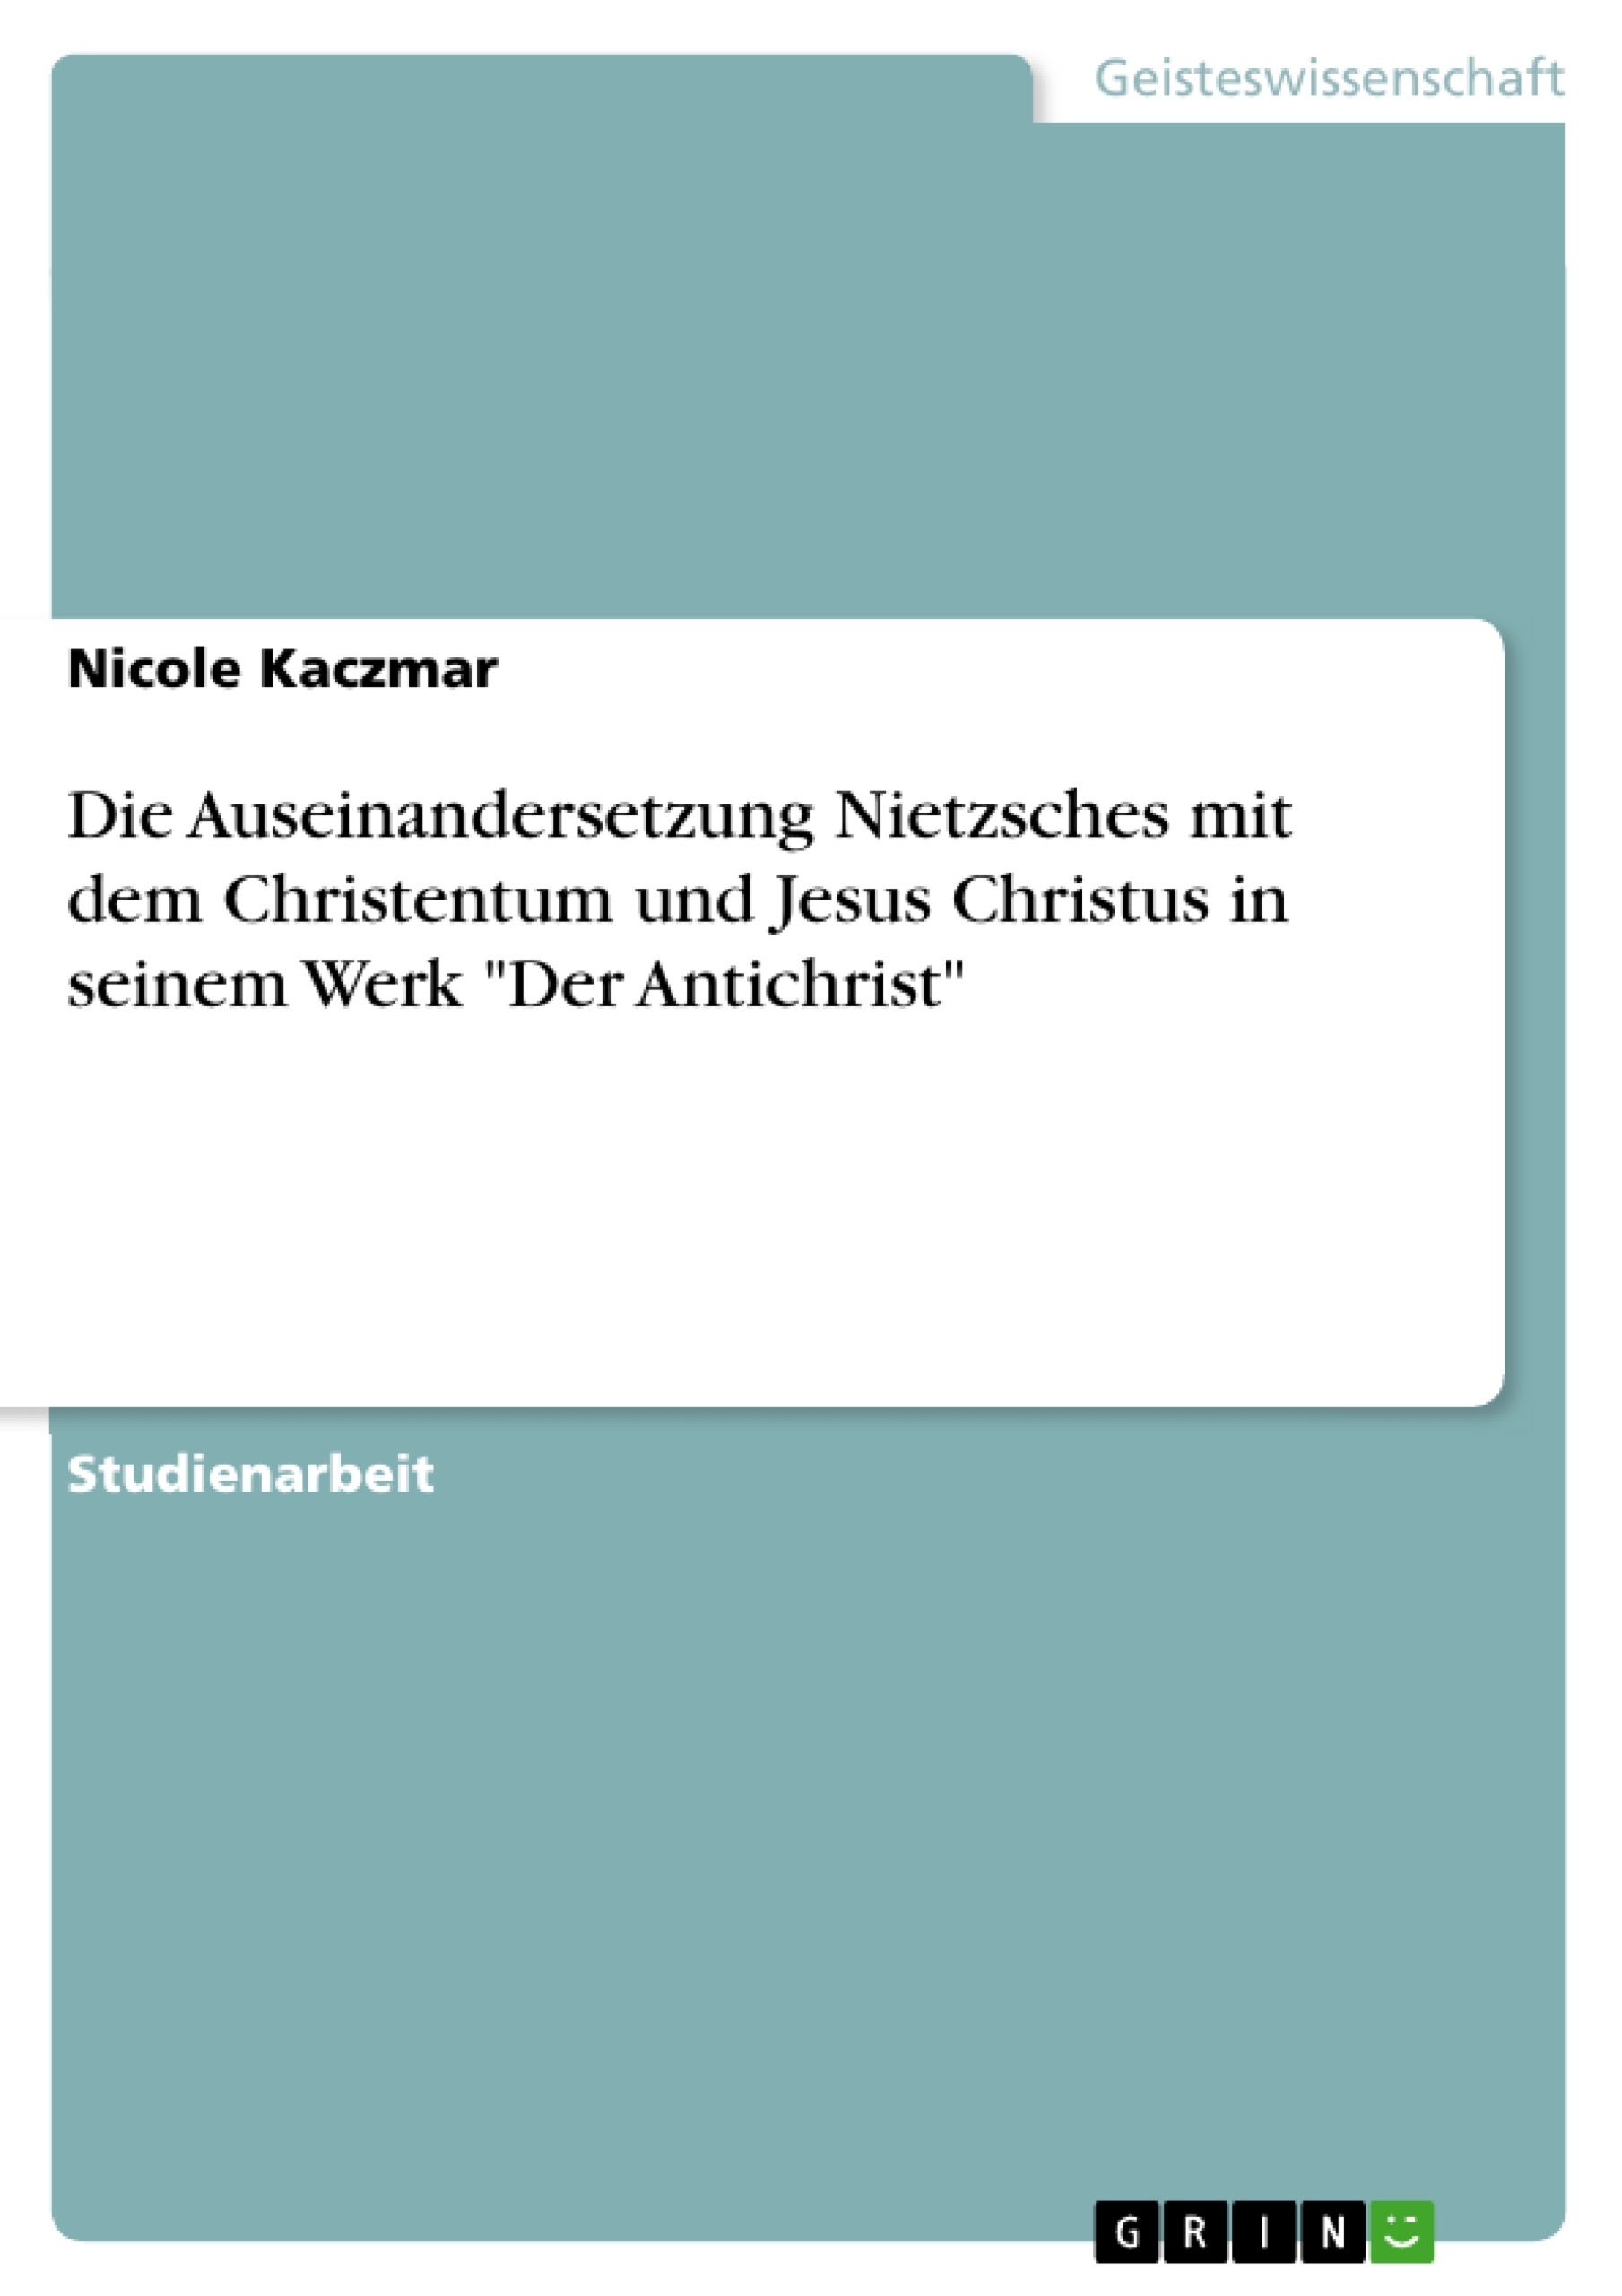 Título: Die Auseinandersetzung Nietzsches mit dem Christentum und Jesus Christus in seinem Werk "Der Antichrist"